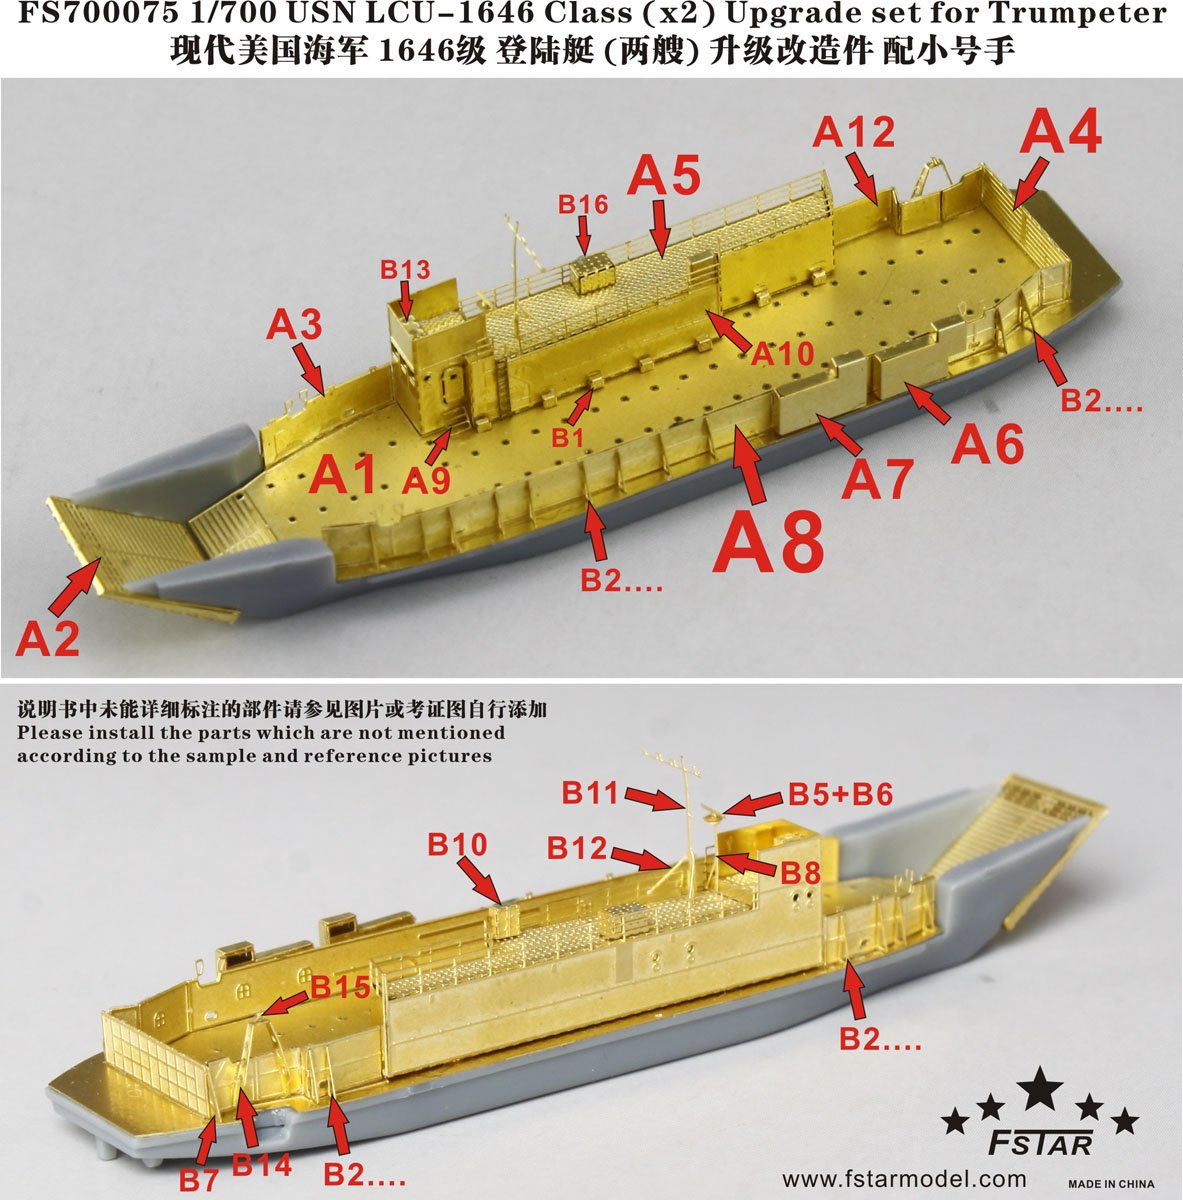 1/700 现代美国海军1646级登陆艇(两艘)细节改造件(配小号手)